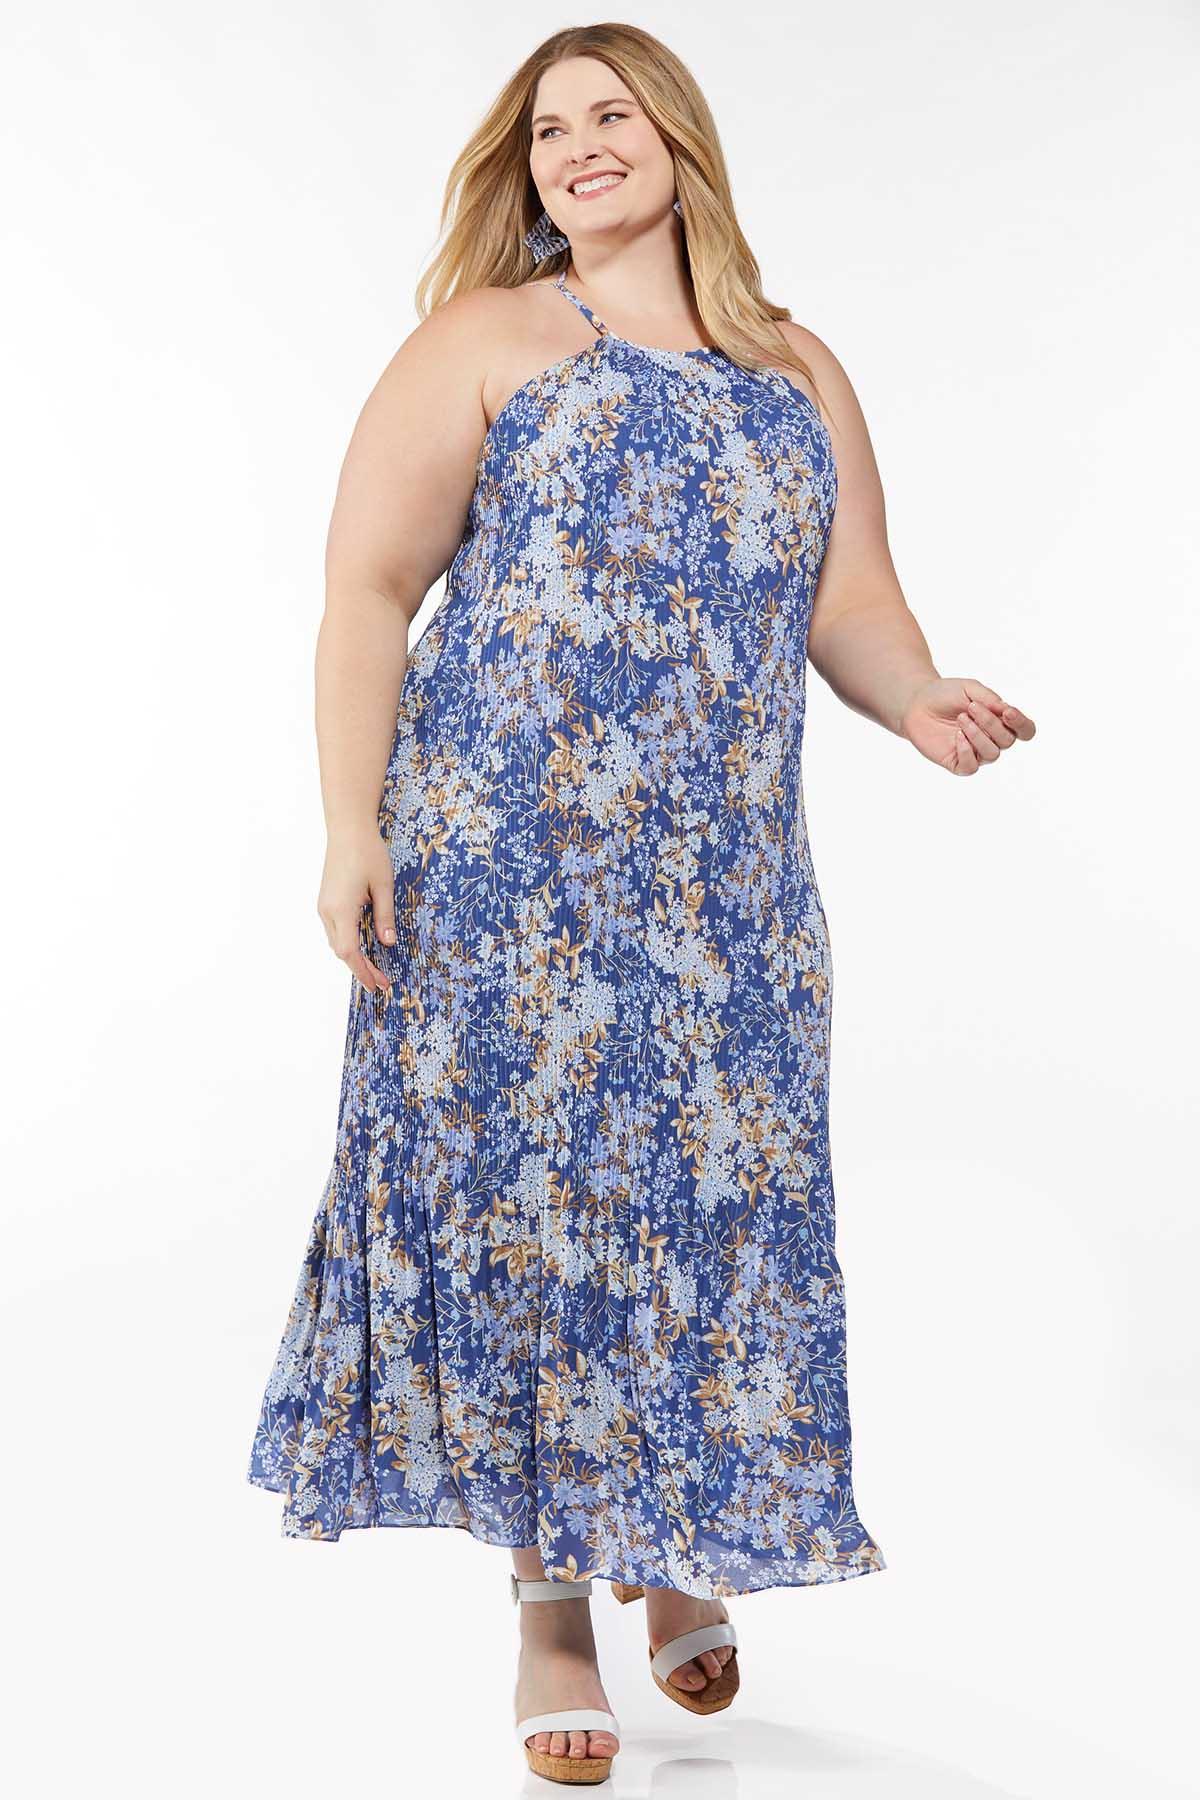 Plus Size Pleated Blue Floral Dress